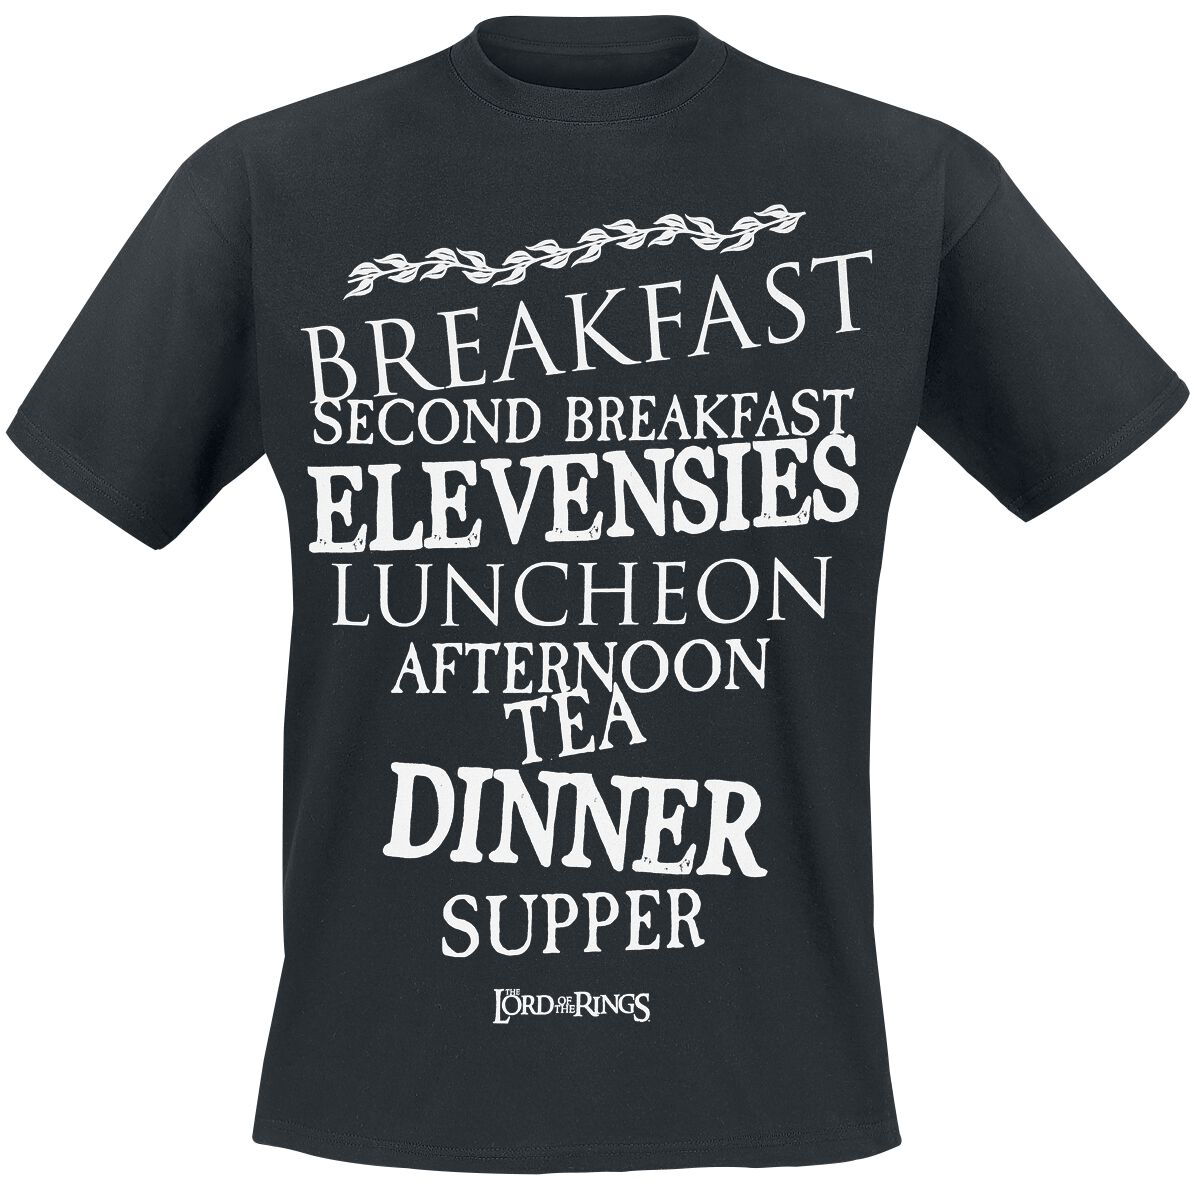 Der Herr der Ringe T-Shirt - Hobbit Meals - S bis 3XL - für Männer - Größe 3XL - schwarz  - EMP exklusives Merchandise!